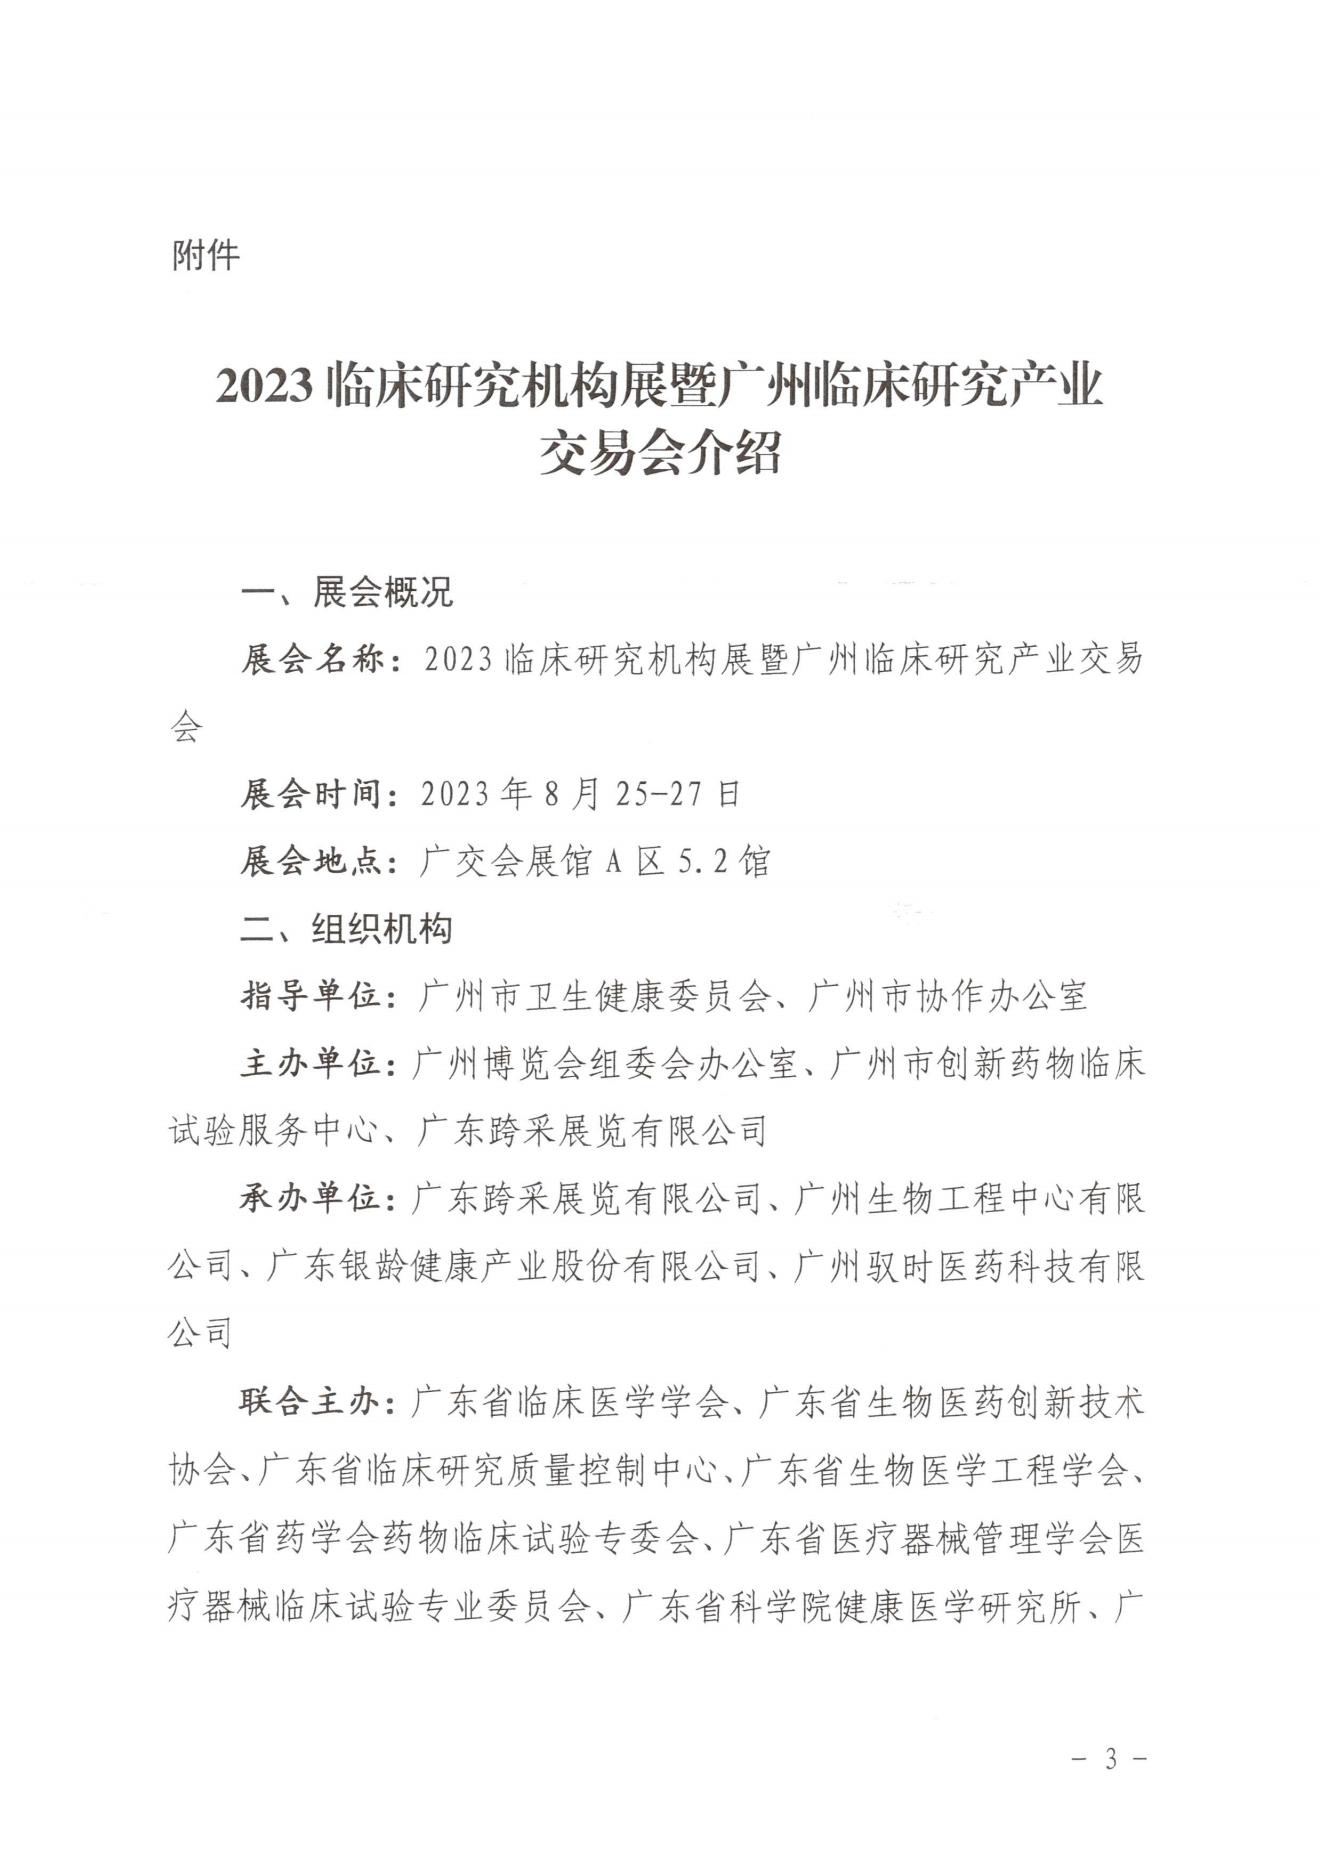 广州市卫健委关于邀请参加2023广州临研会的函-完整版(1)_02.jpg